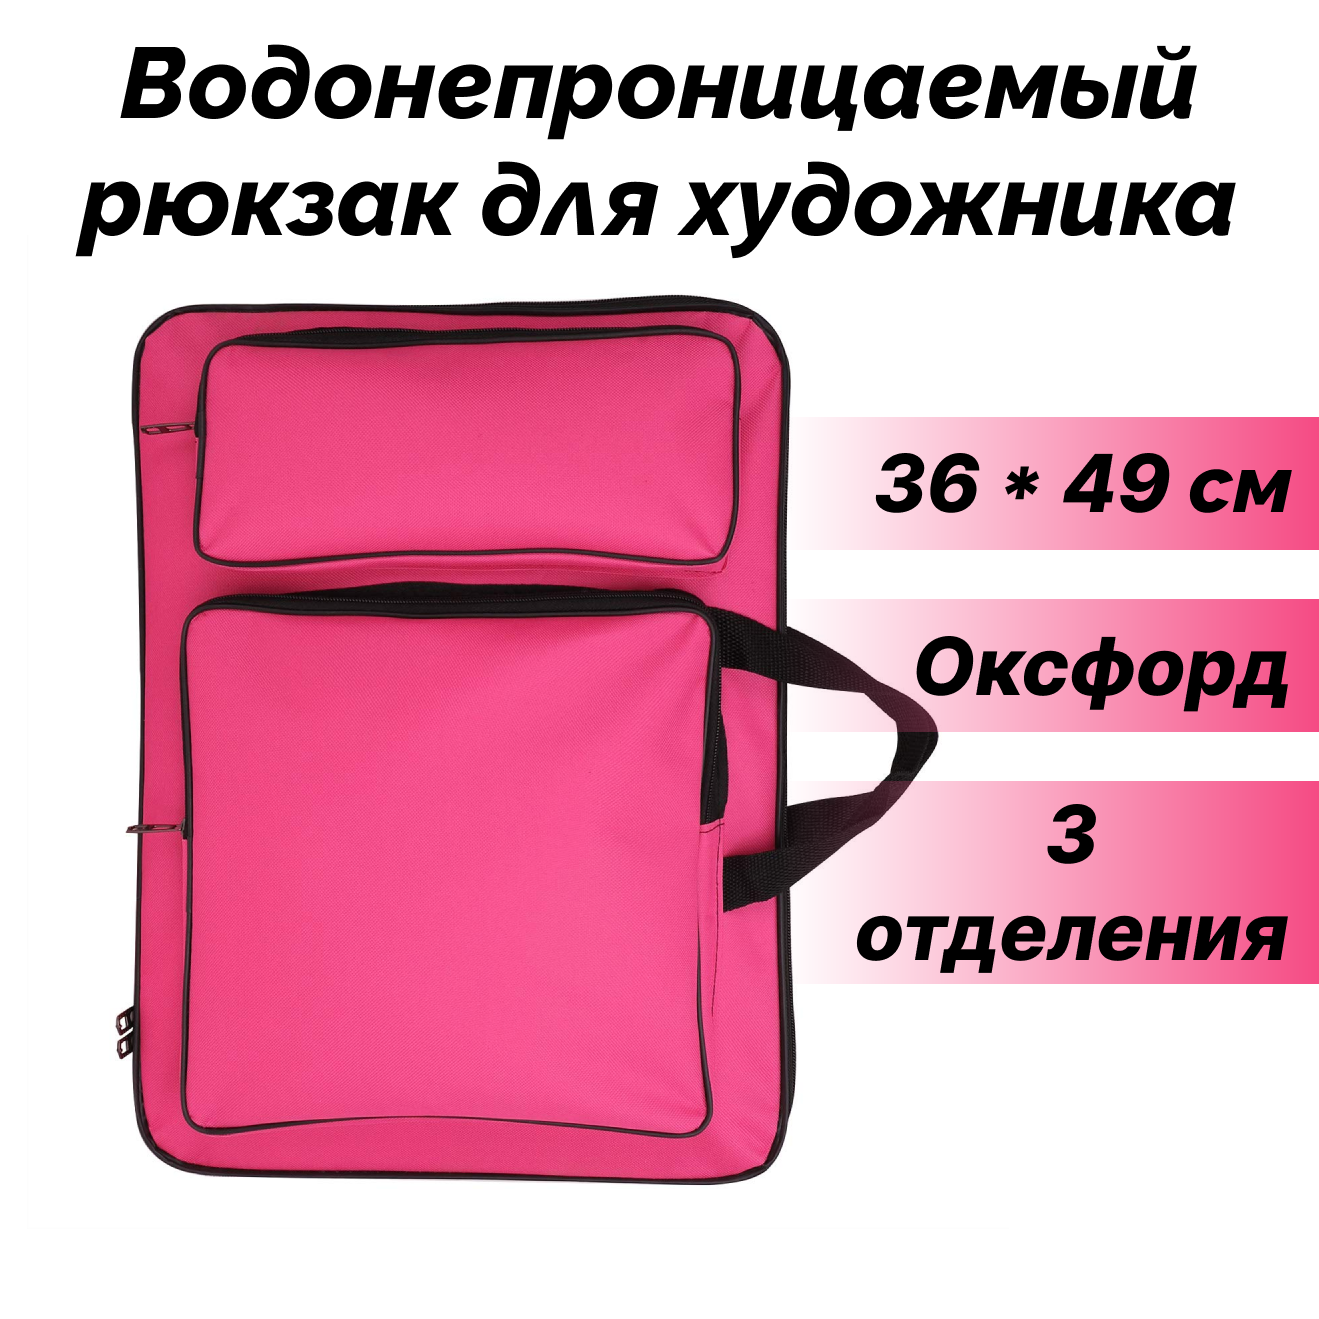 Водонепроницаемый рюкзак для художника NEZZ 36*49 см, розовый